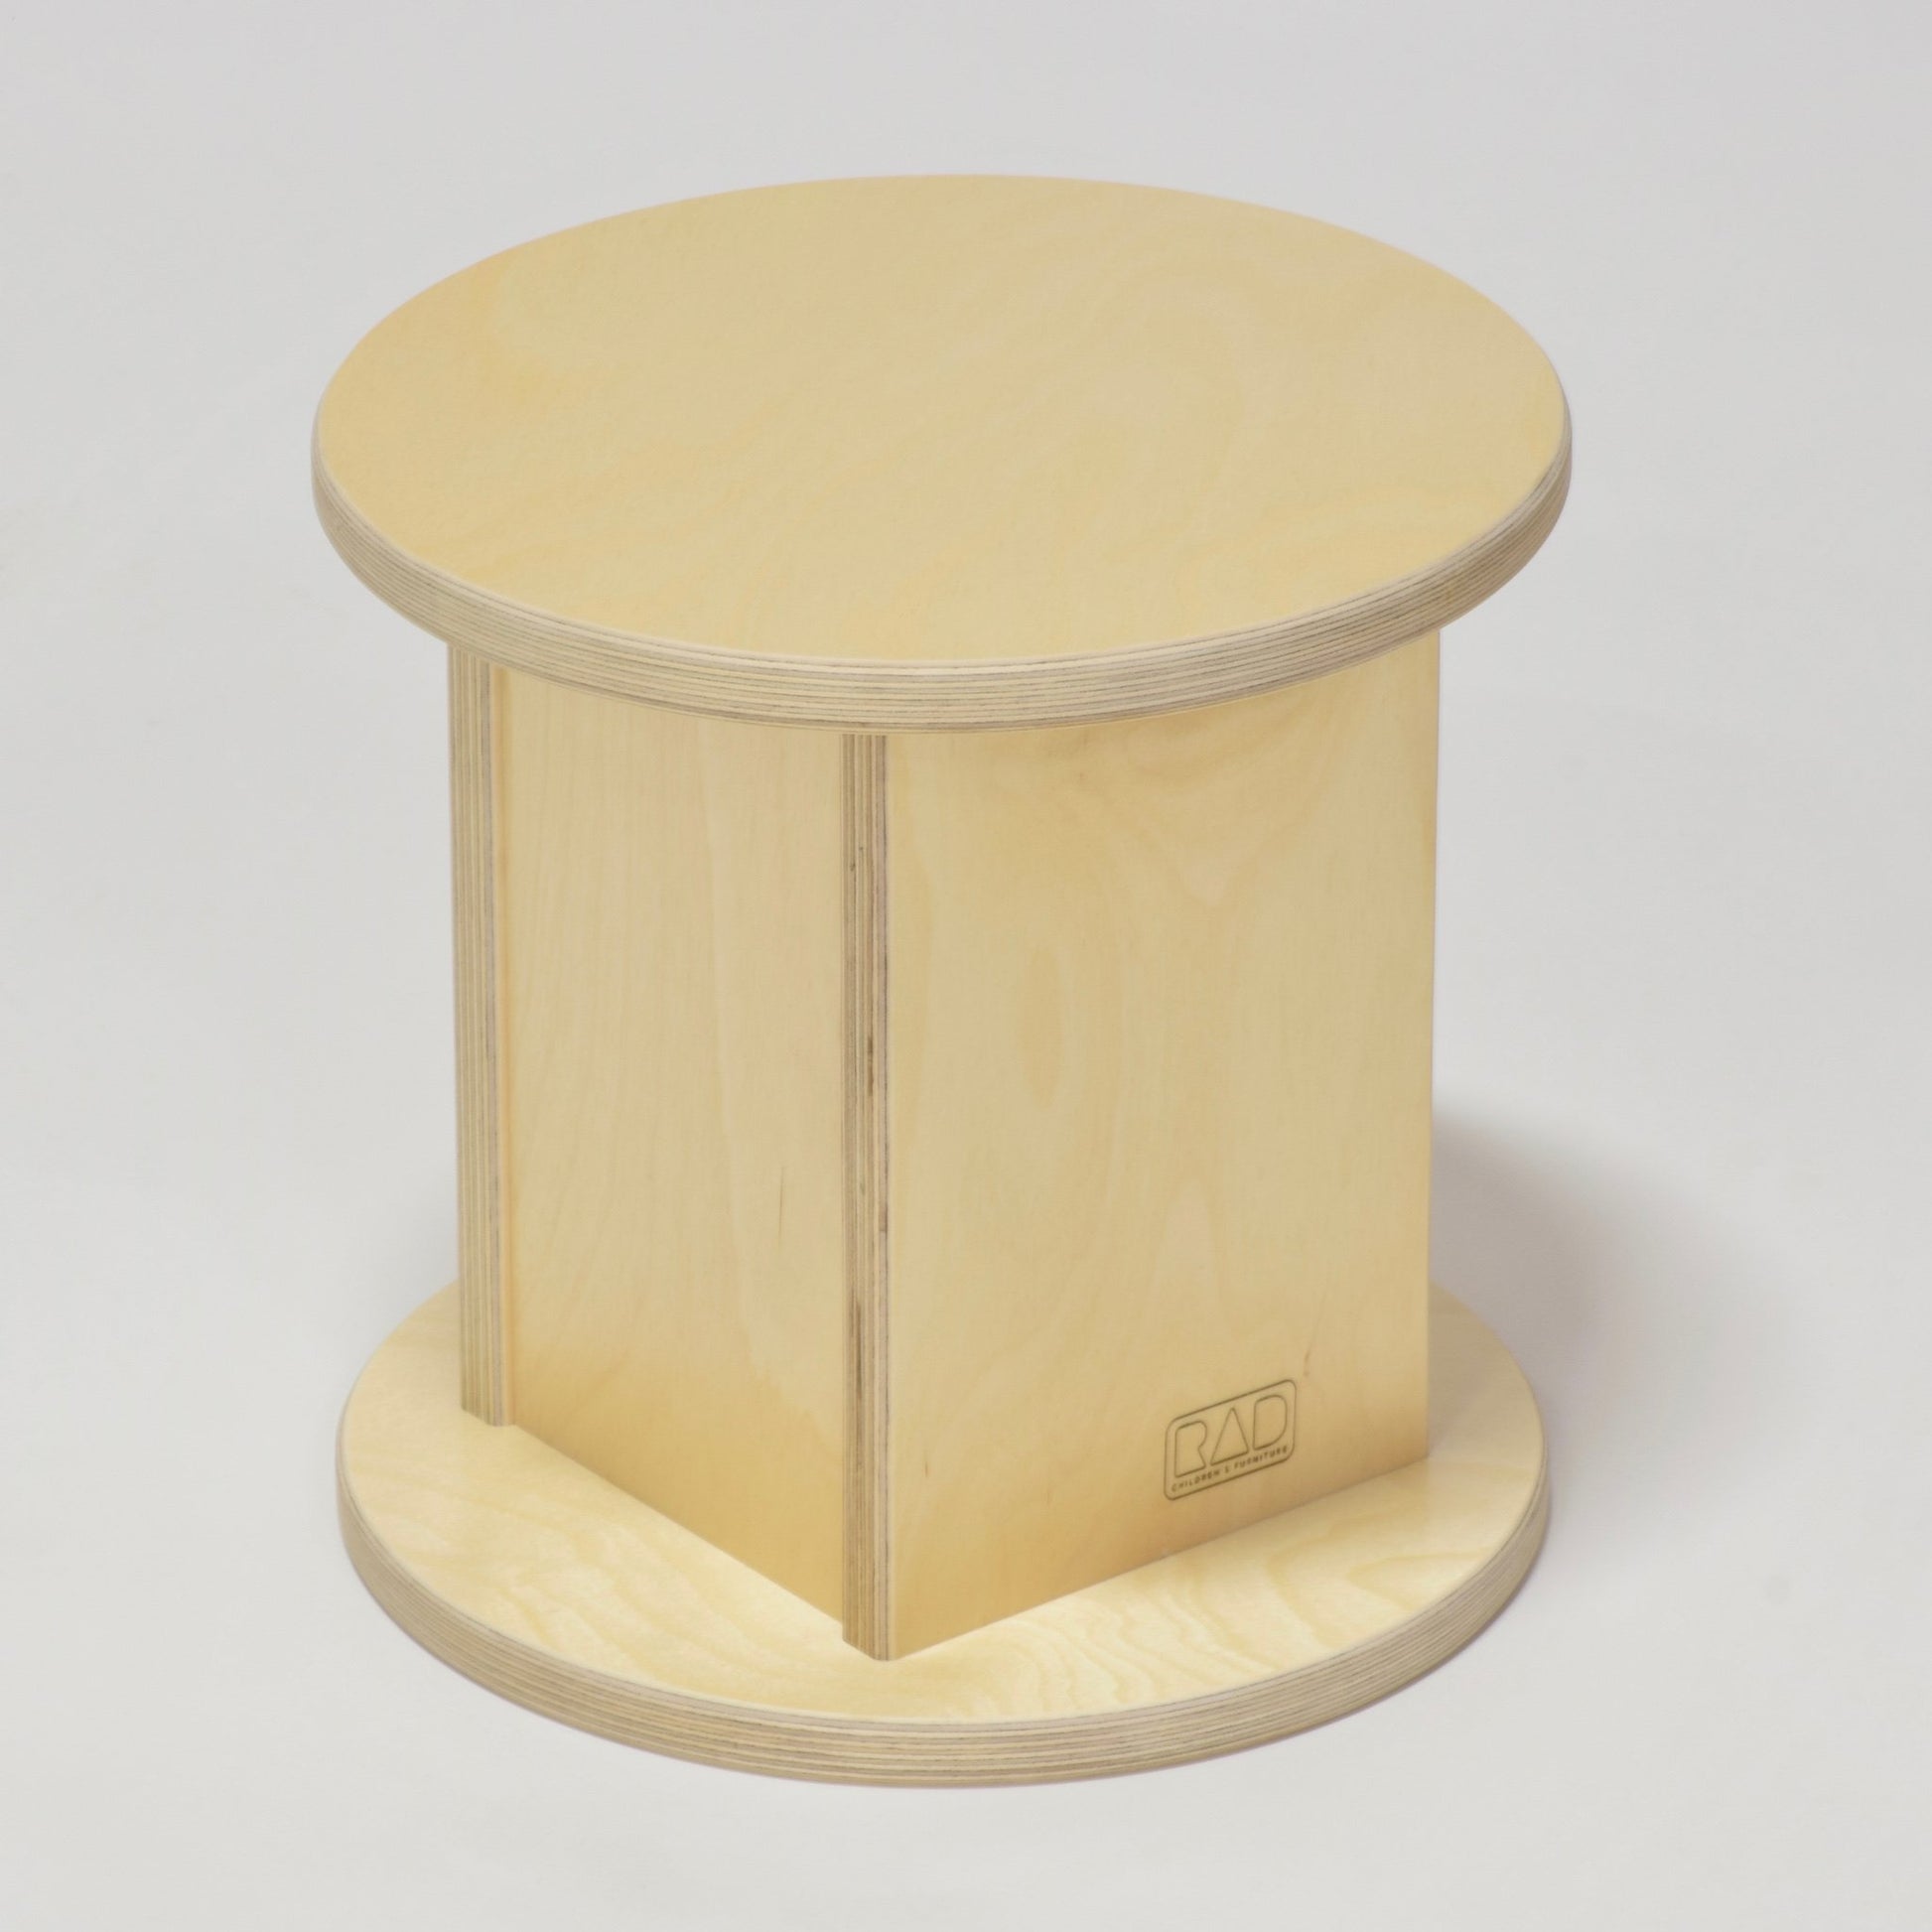 wooden stool for children